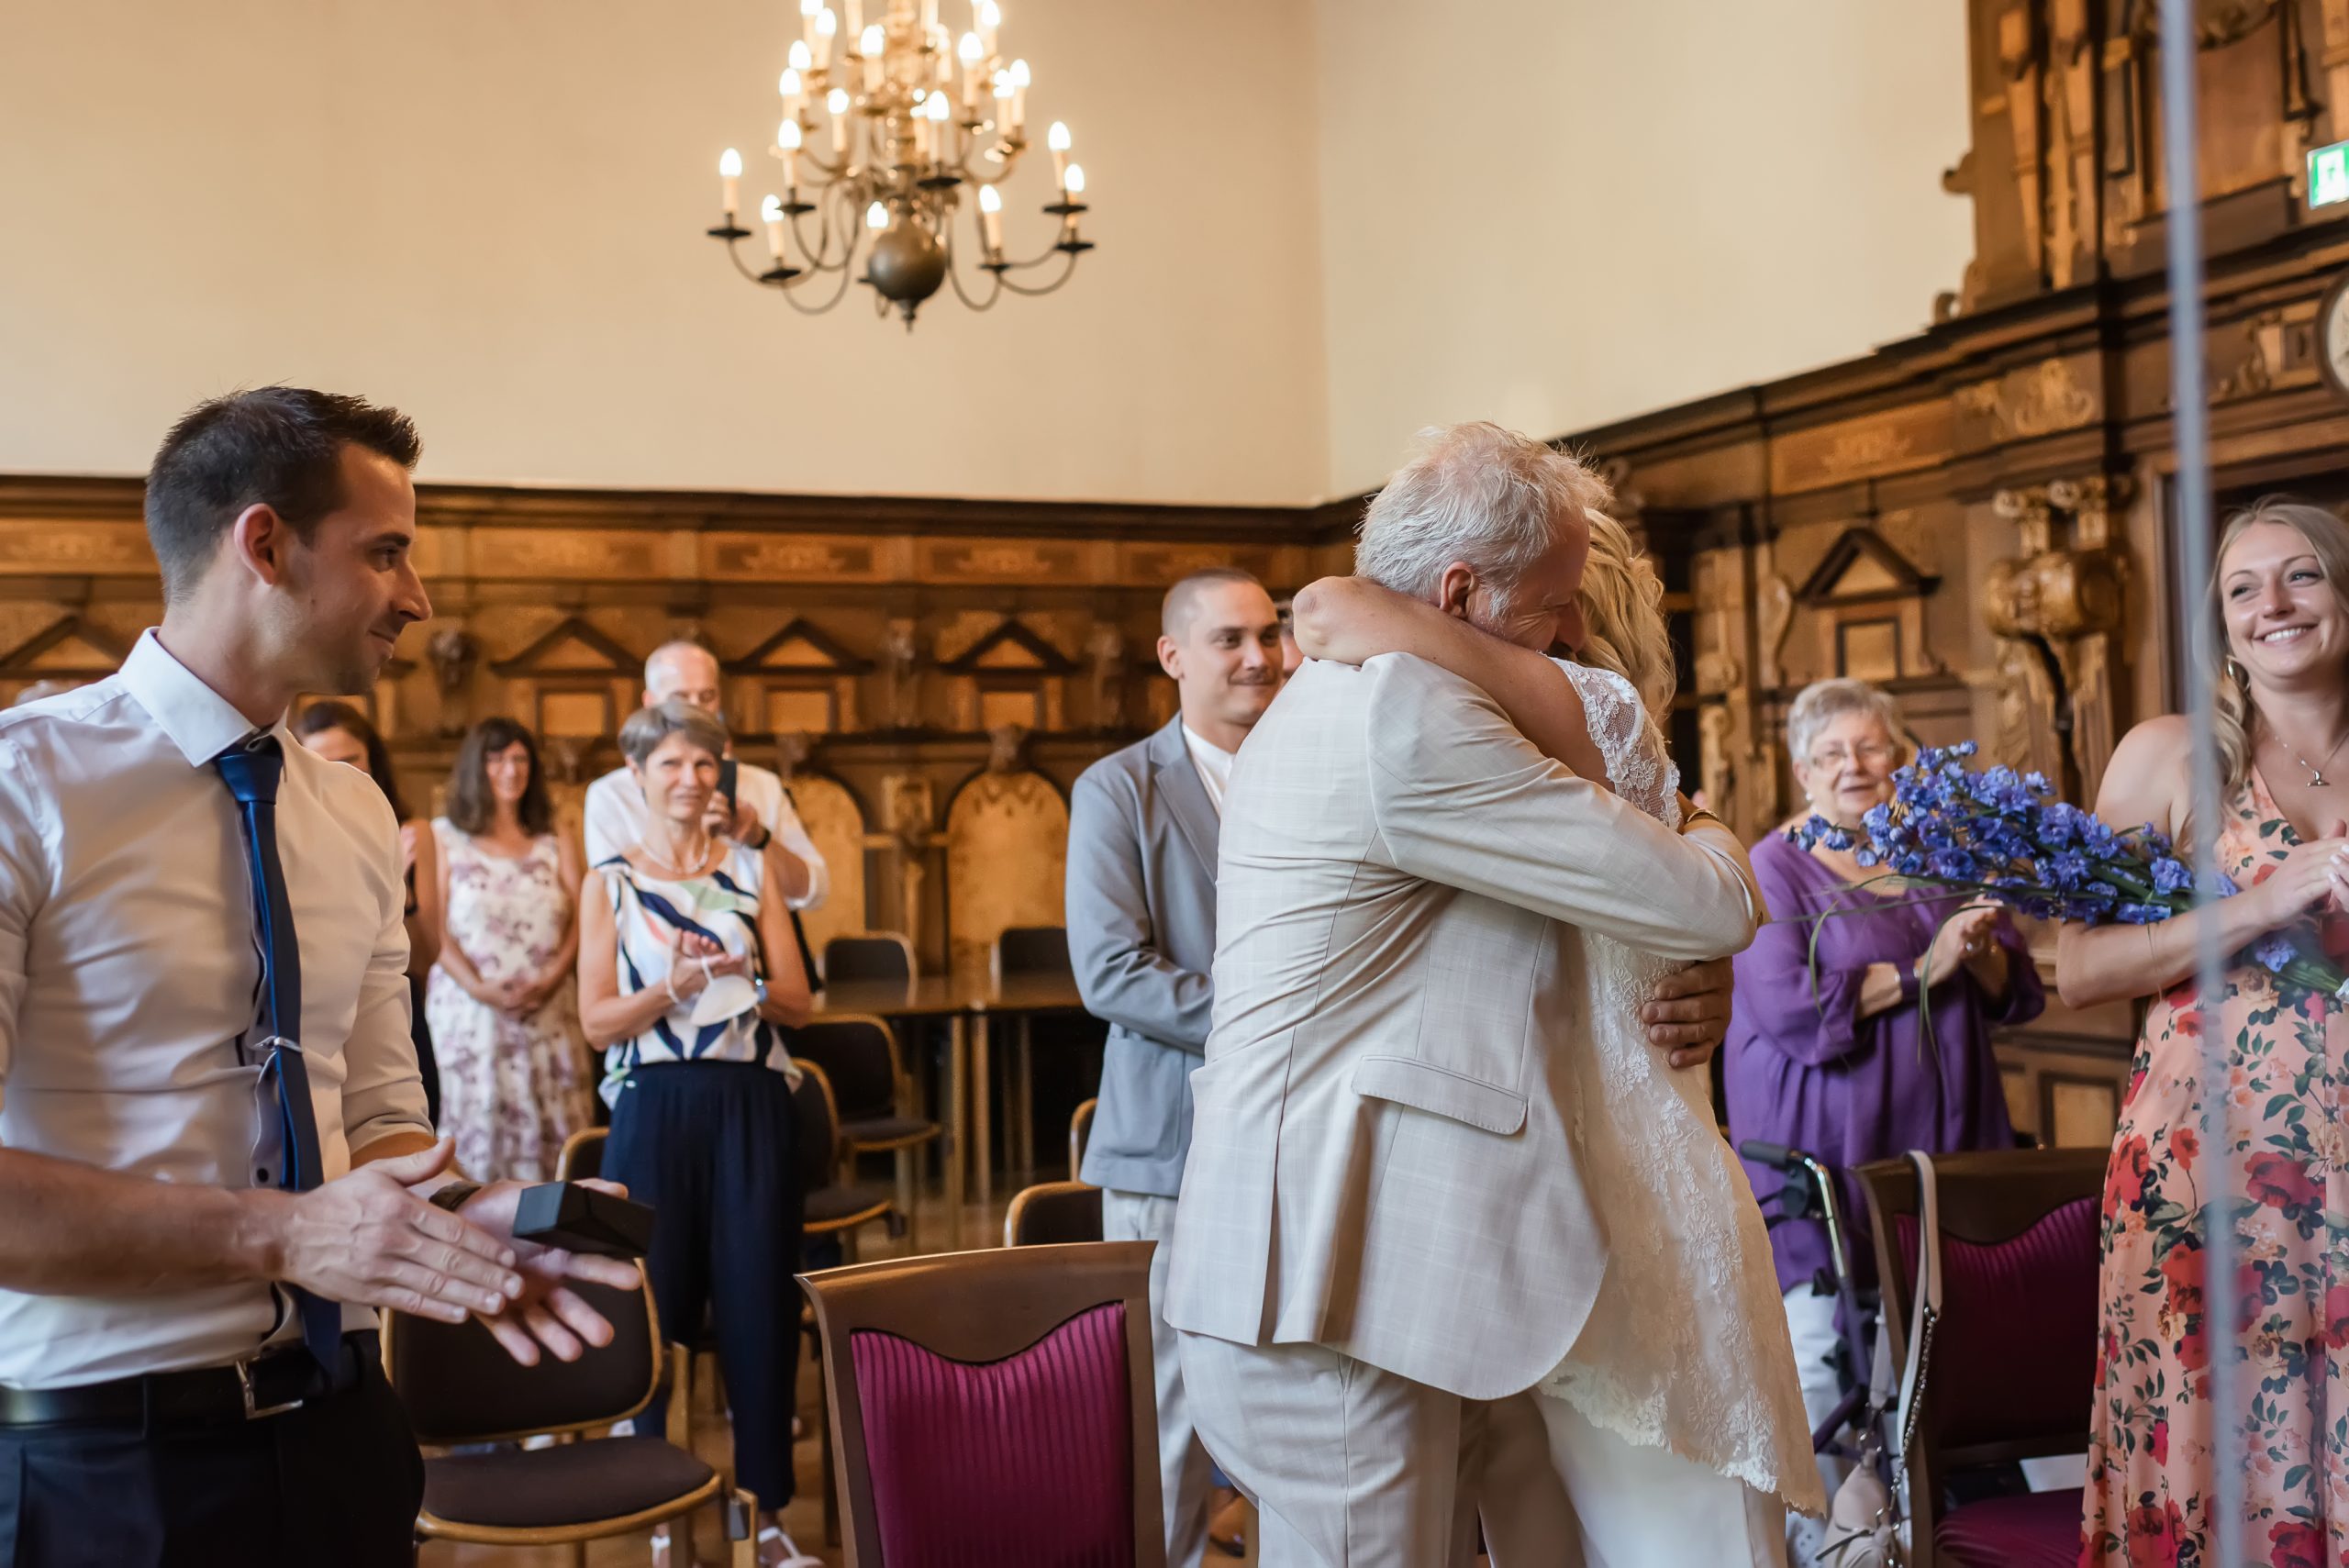 Ein Brautpaar umarmt sich nach der standesamtlichen Trauung im Freiburger Rathaus, während die Gäste applaudieren.